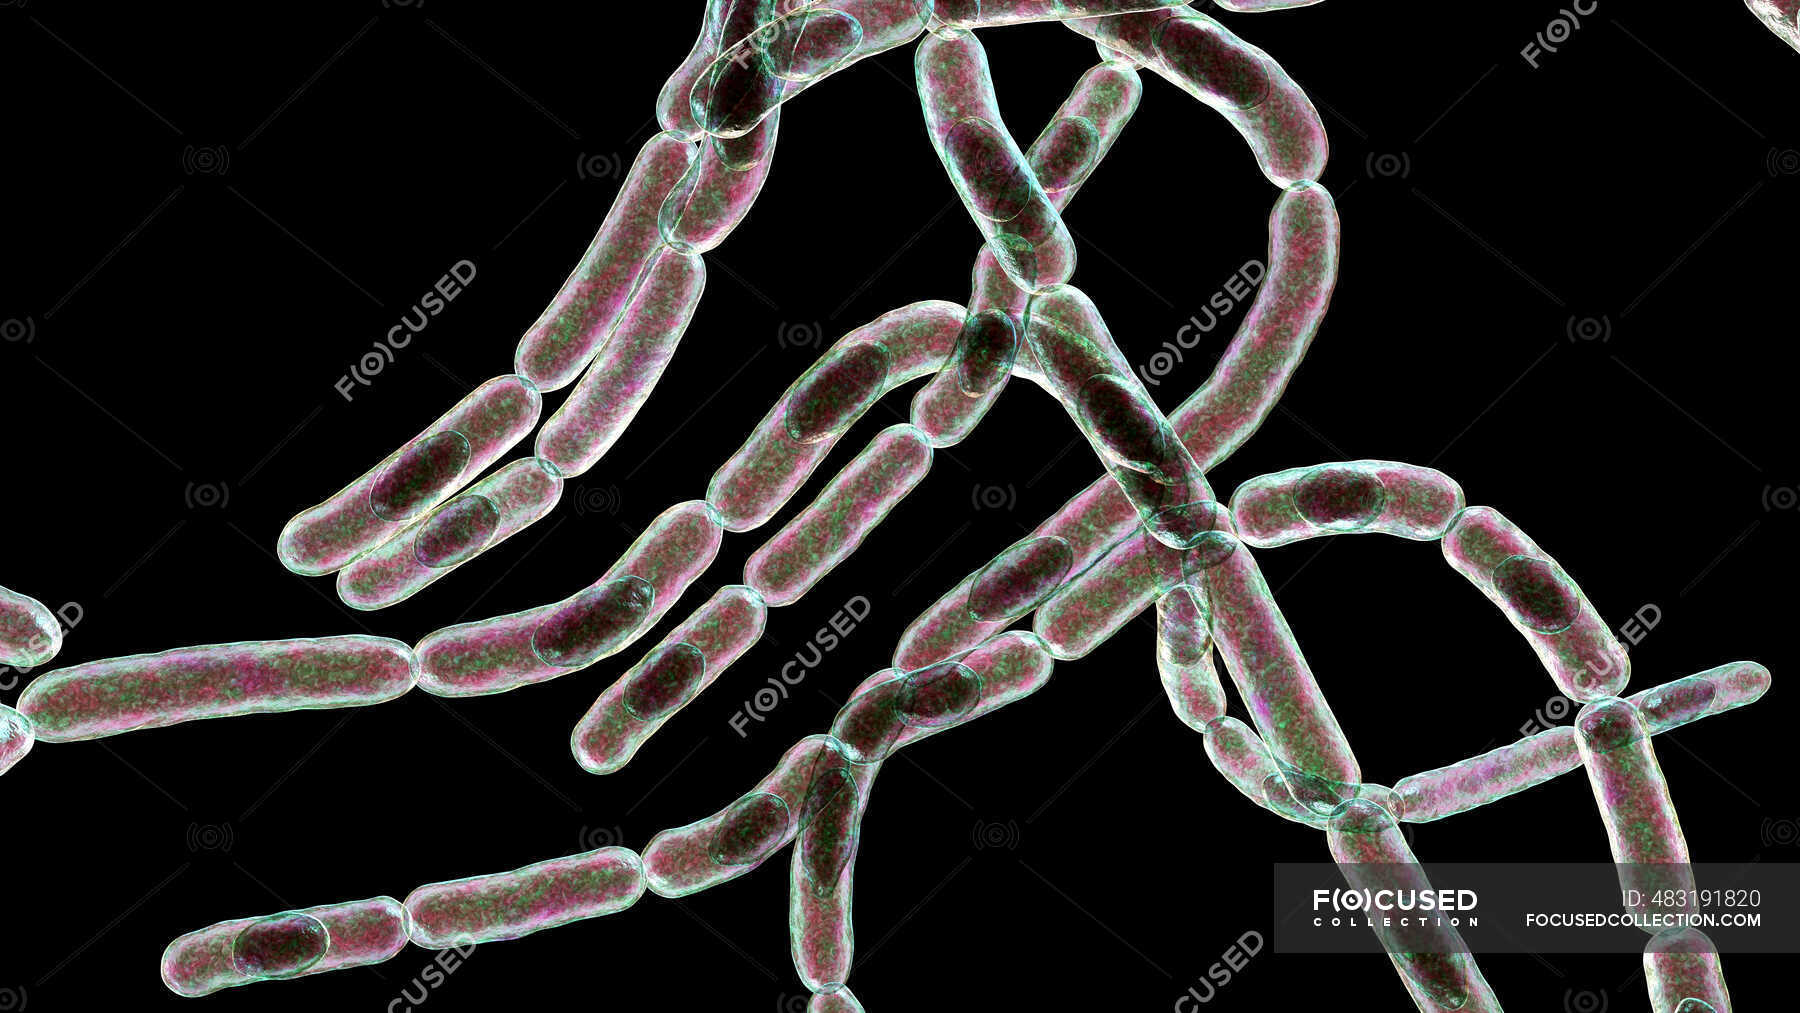 Bactérias Antraz Ilustração Bactérias Antraz Bacillus Anthracis São A Causa Da Doença Antraz 5158